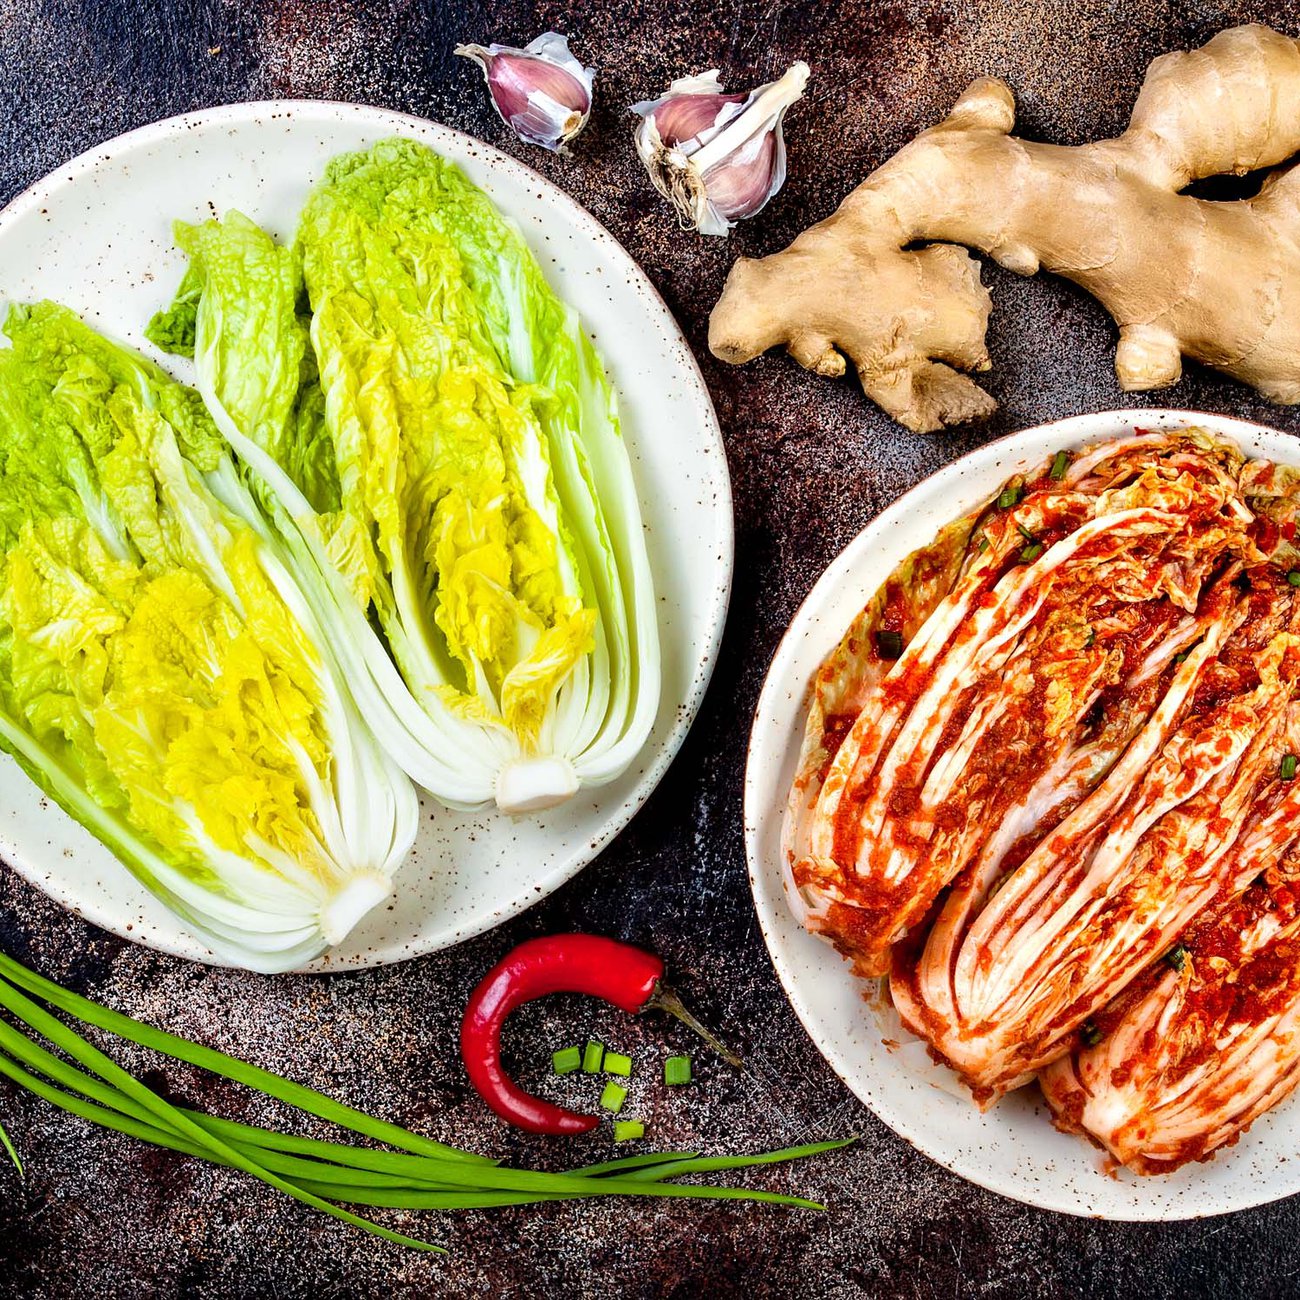 Spicy seasoning gives kimchi its trademark kick